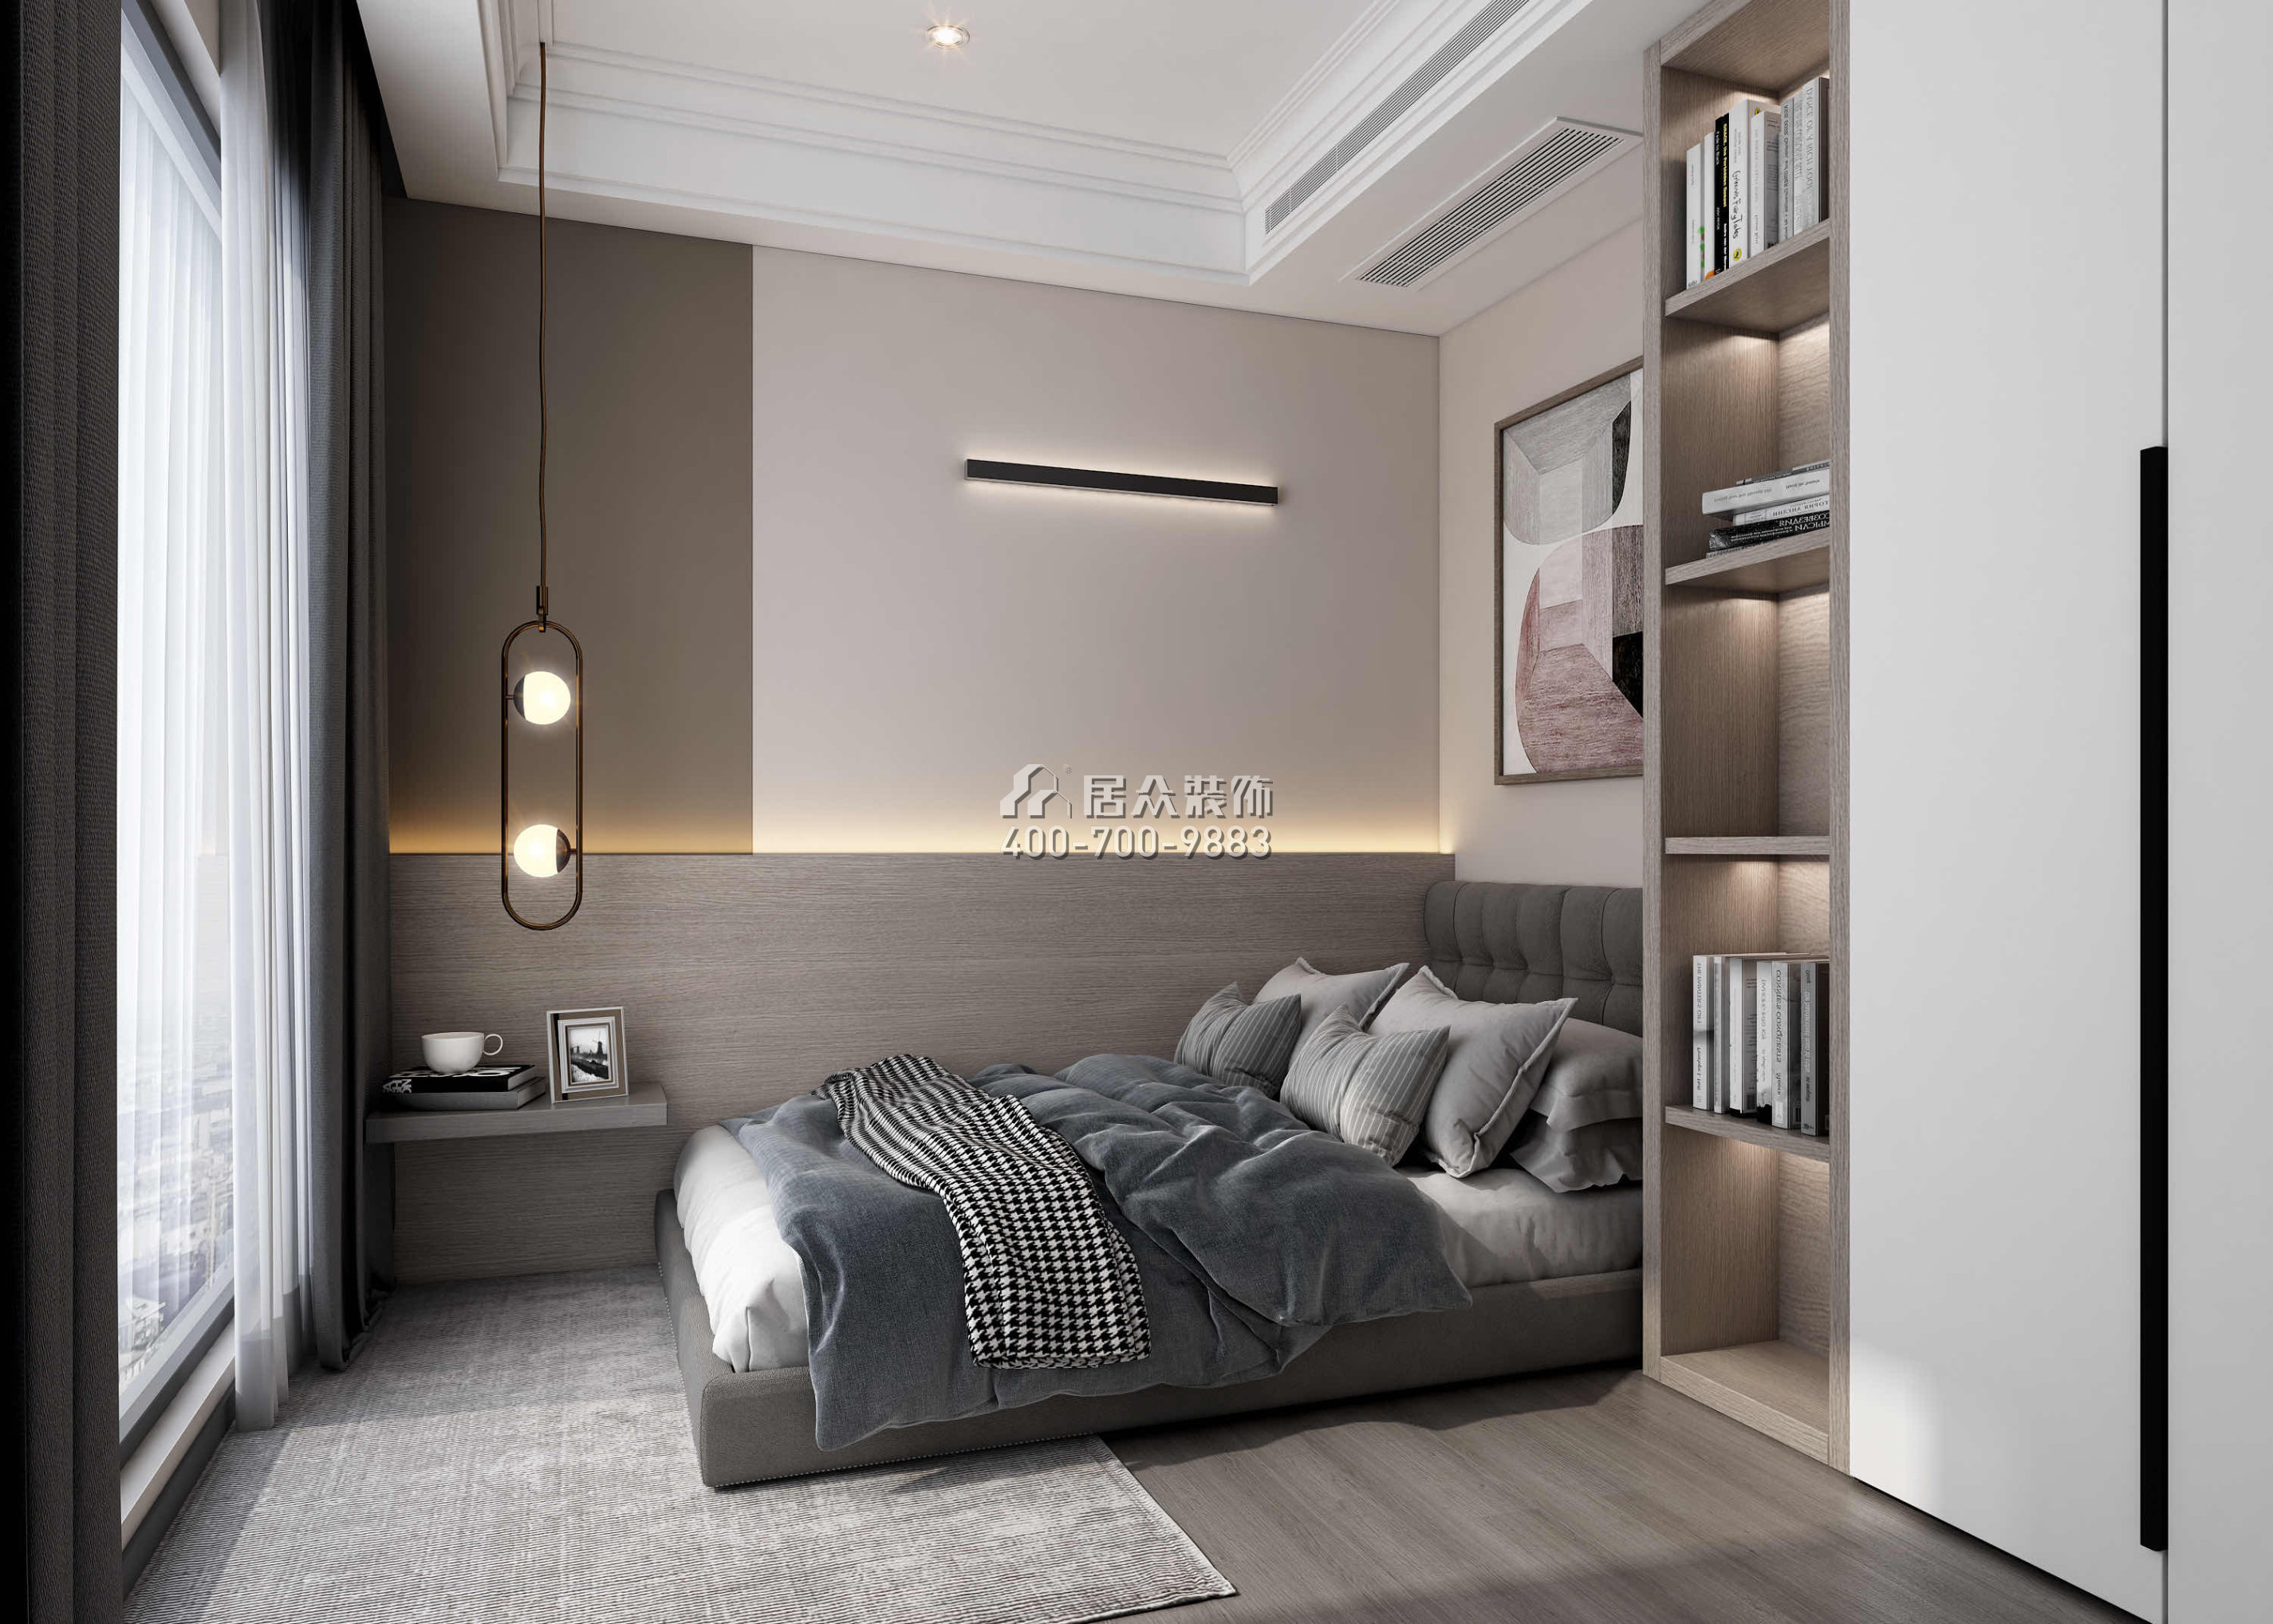 天鵝堡370平方米現代簡約風格平層戶型臥室裝修效果圖